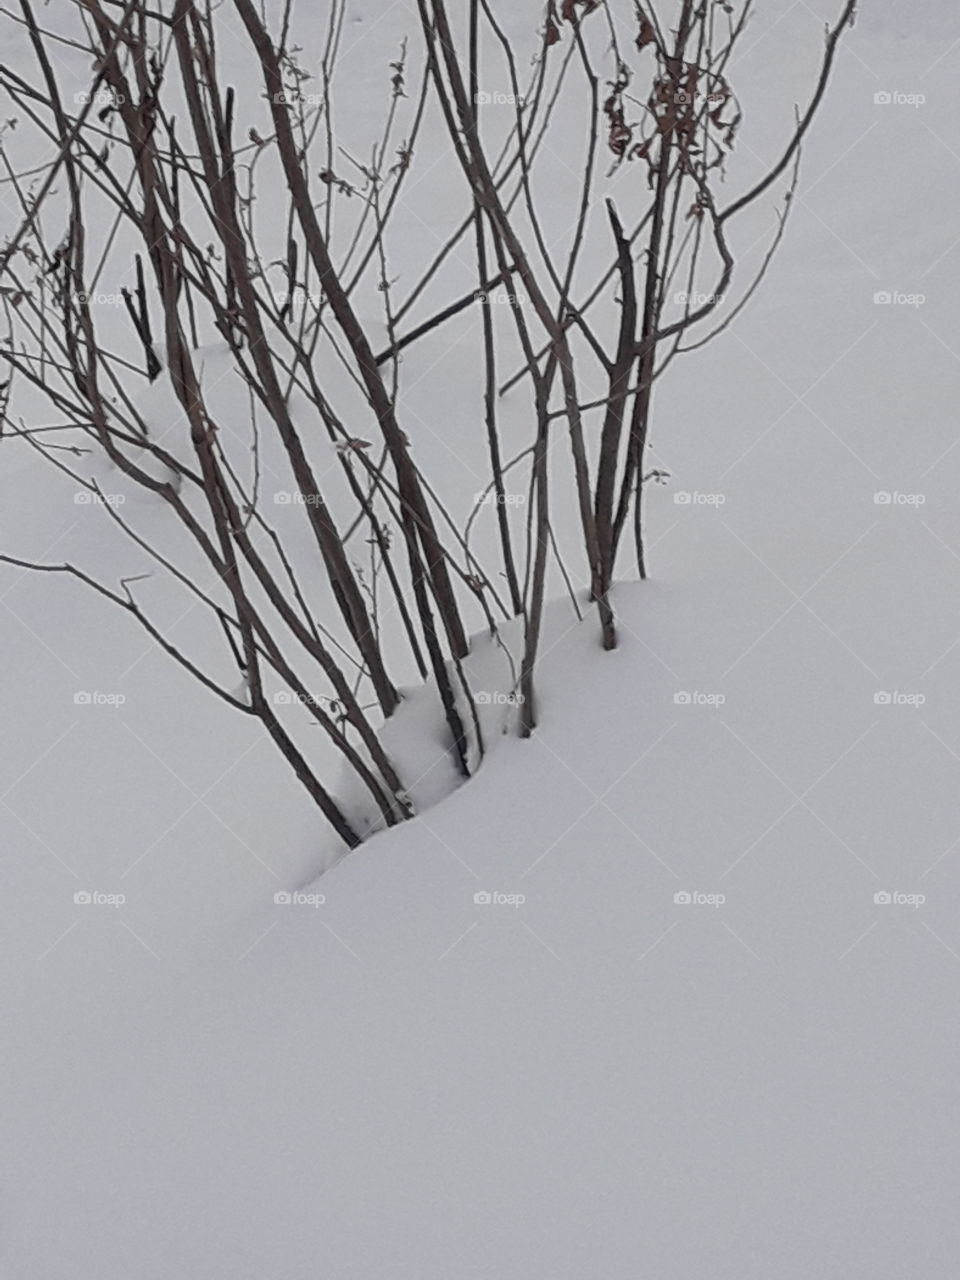 Winter, Tree, Snow, Landscape, No Person